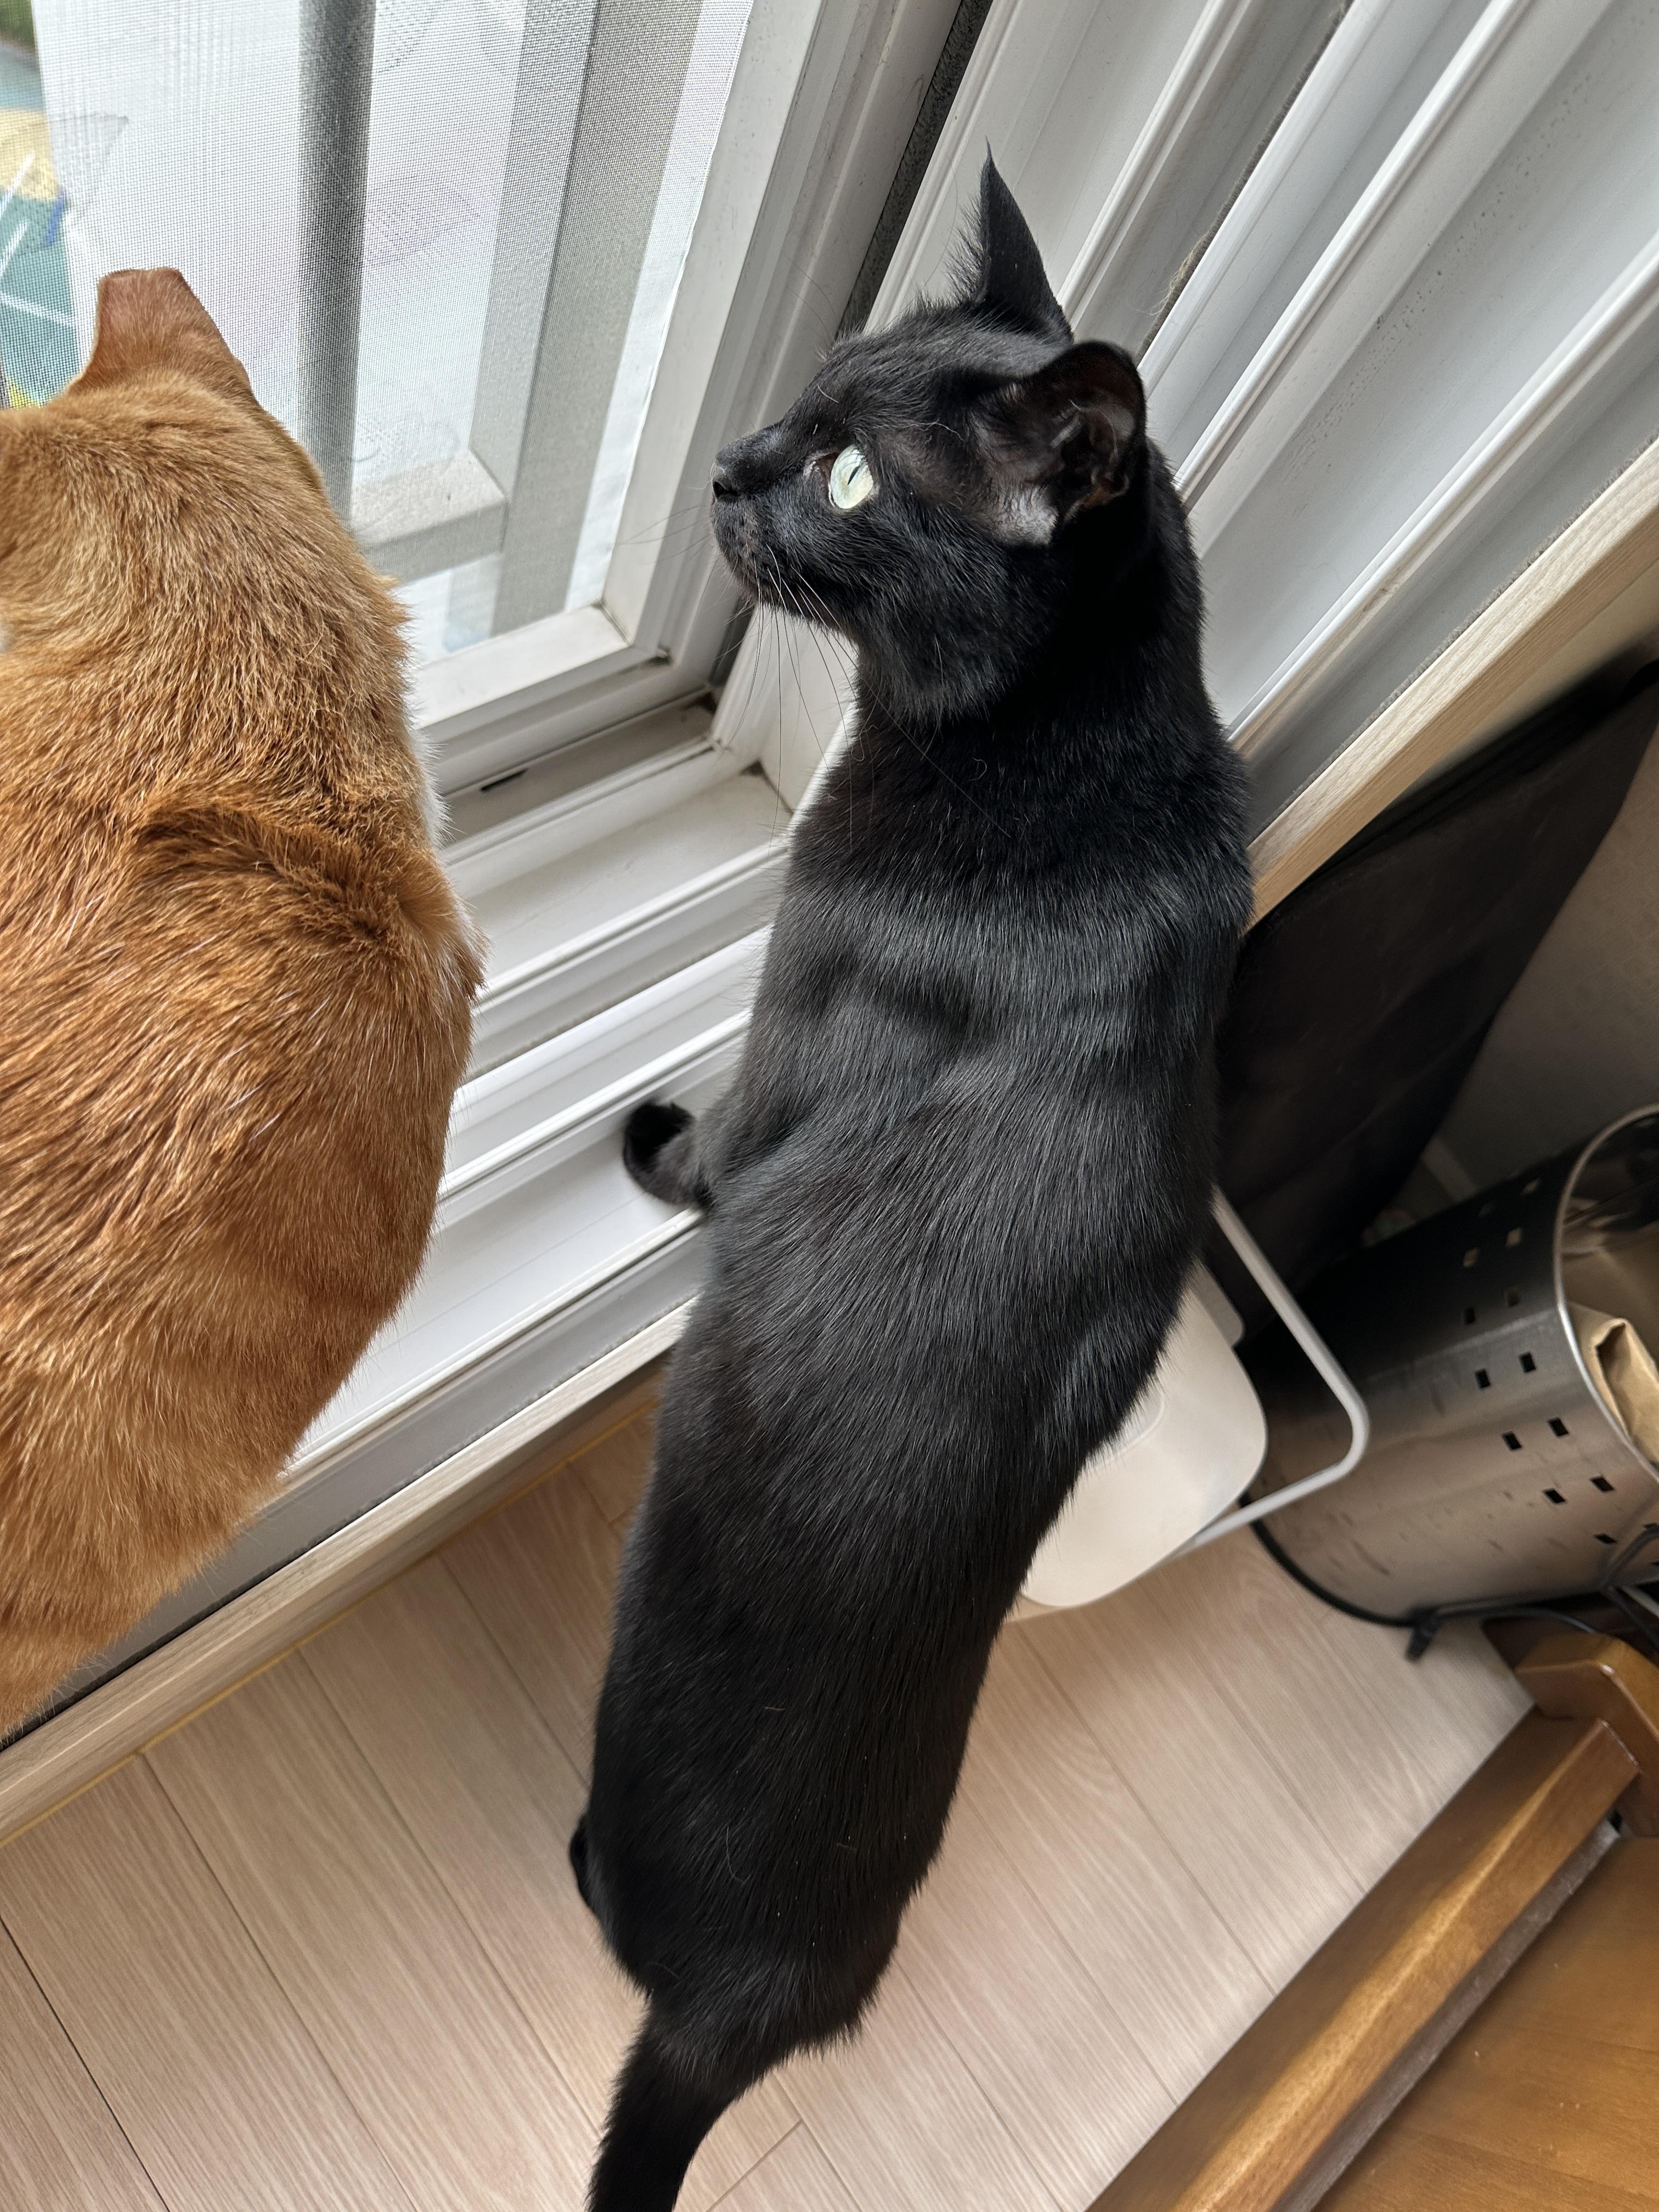 안전방충망에 머리 꼭 대고 창밖 구경하고 있어서 귀가 접힌 고양이들